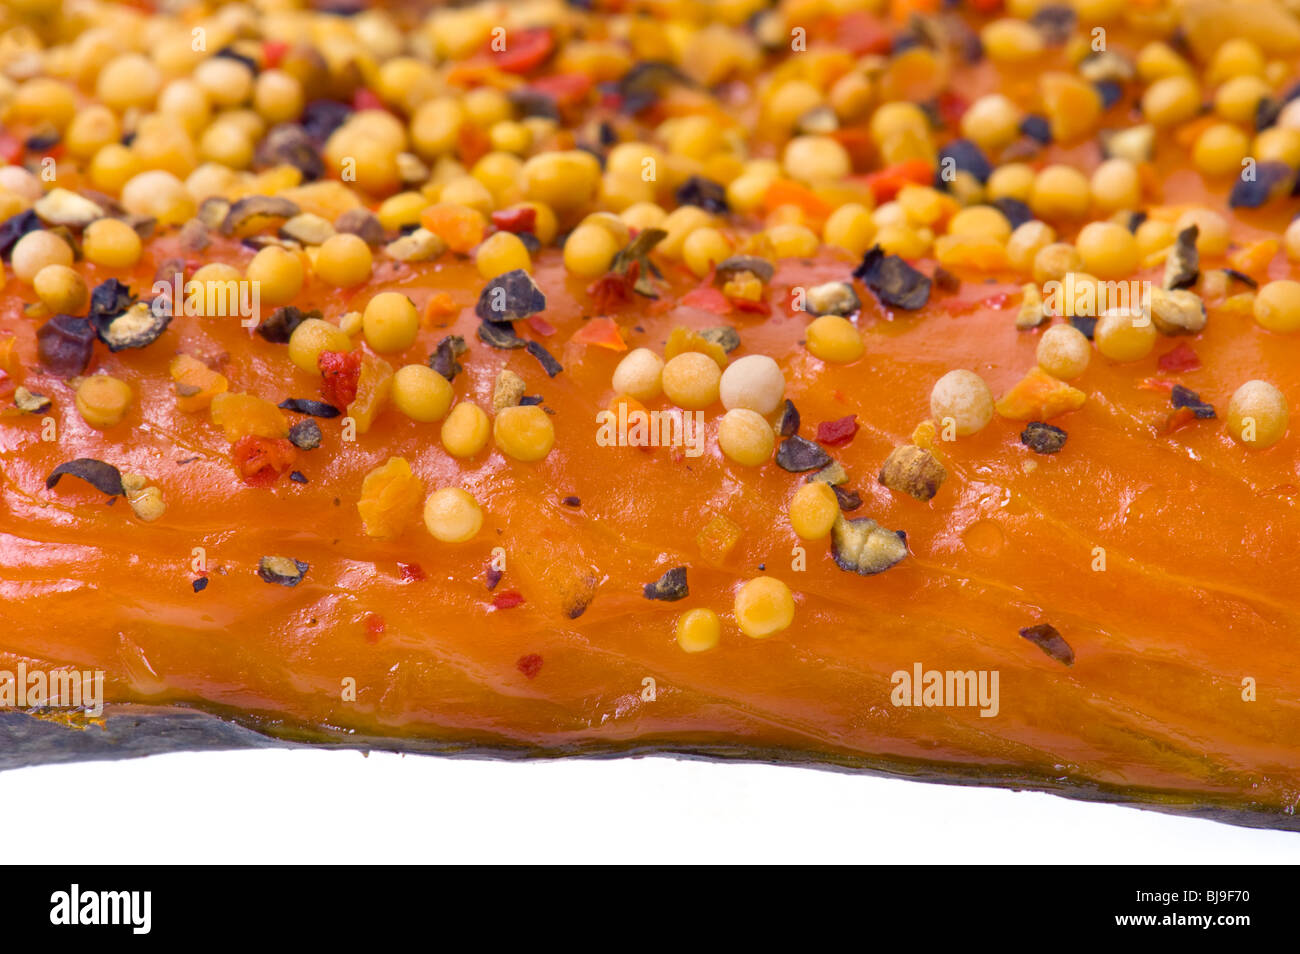 Stremel-Lachs Stremel heiß geräuchert Stücke Lachs Fisch-Filet mit Paprika und Gewürze Pfeffer Paprika Zwiebel Senf Samen Rauch s Stockfoto